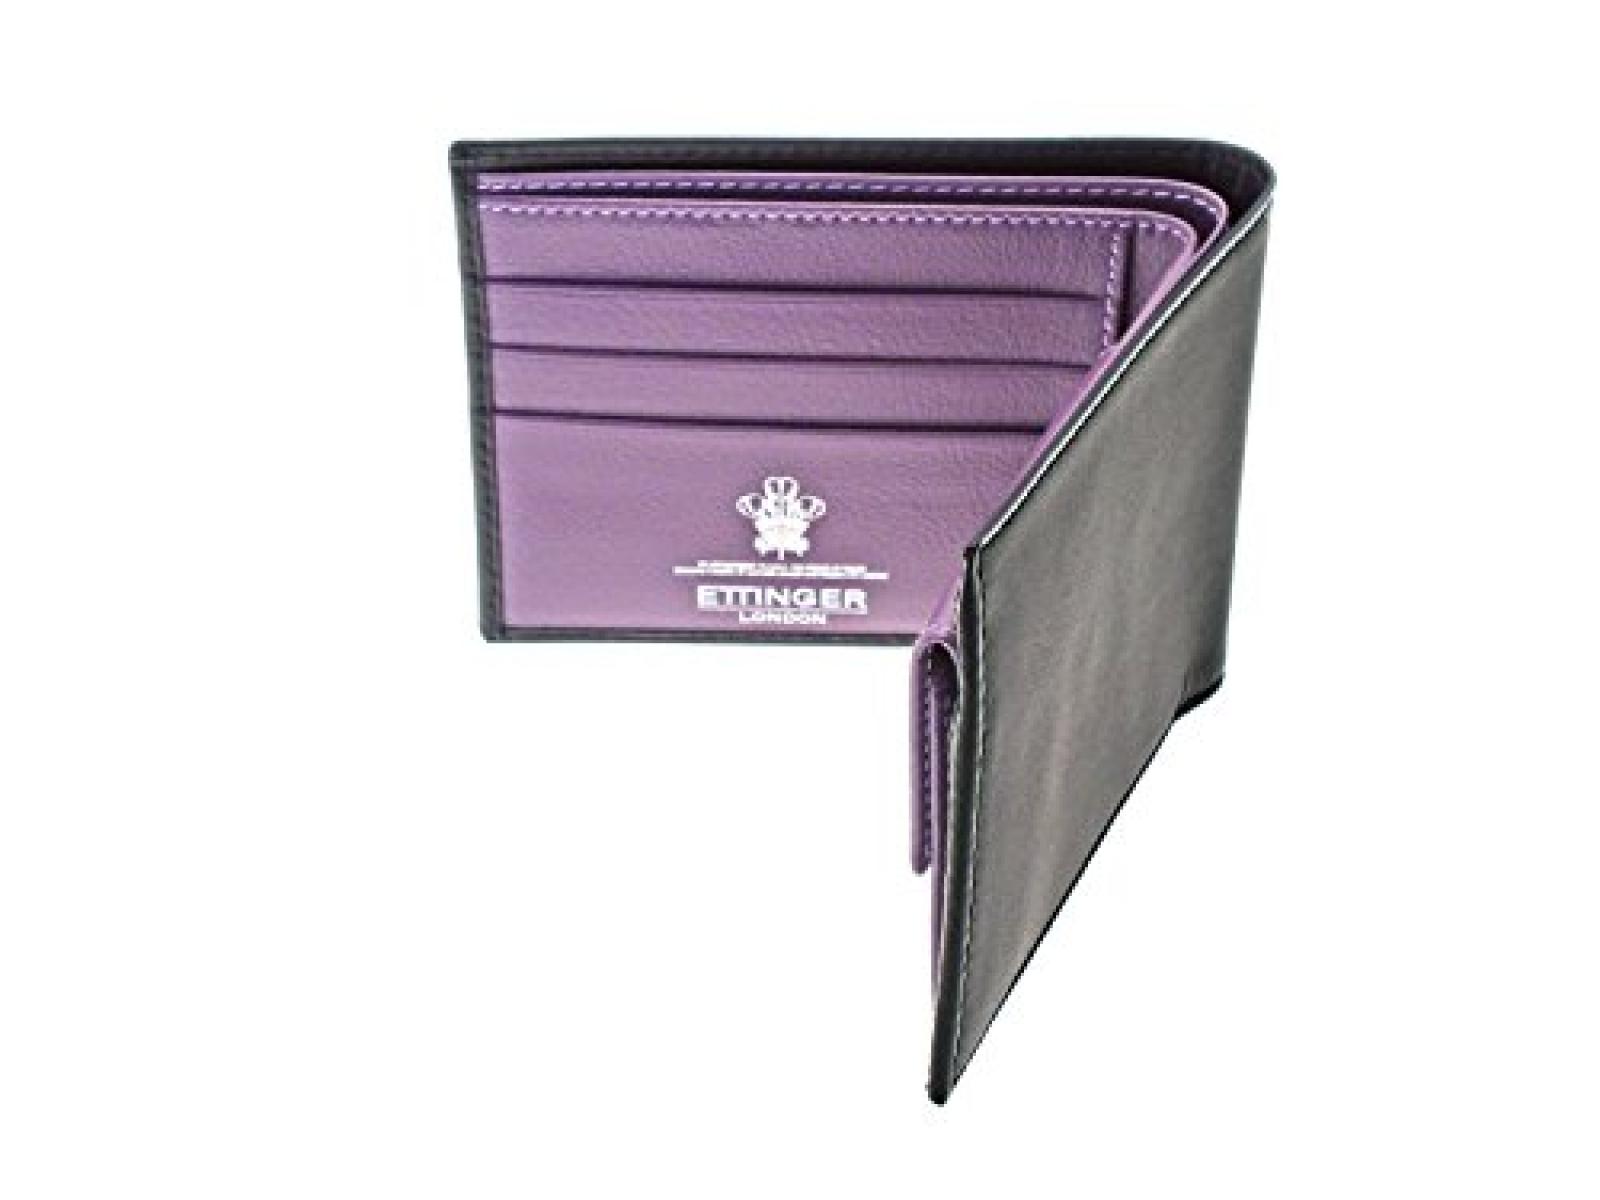 Ettinger - Brieftasche aus Leder mit Münzfach - Schwarz außen / Violett innen 